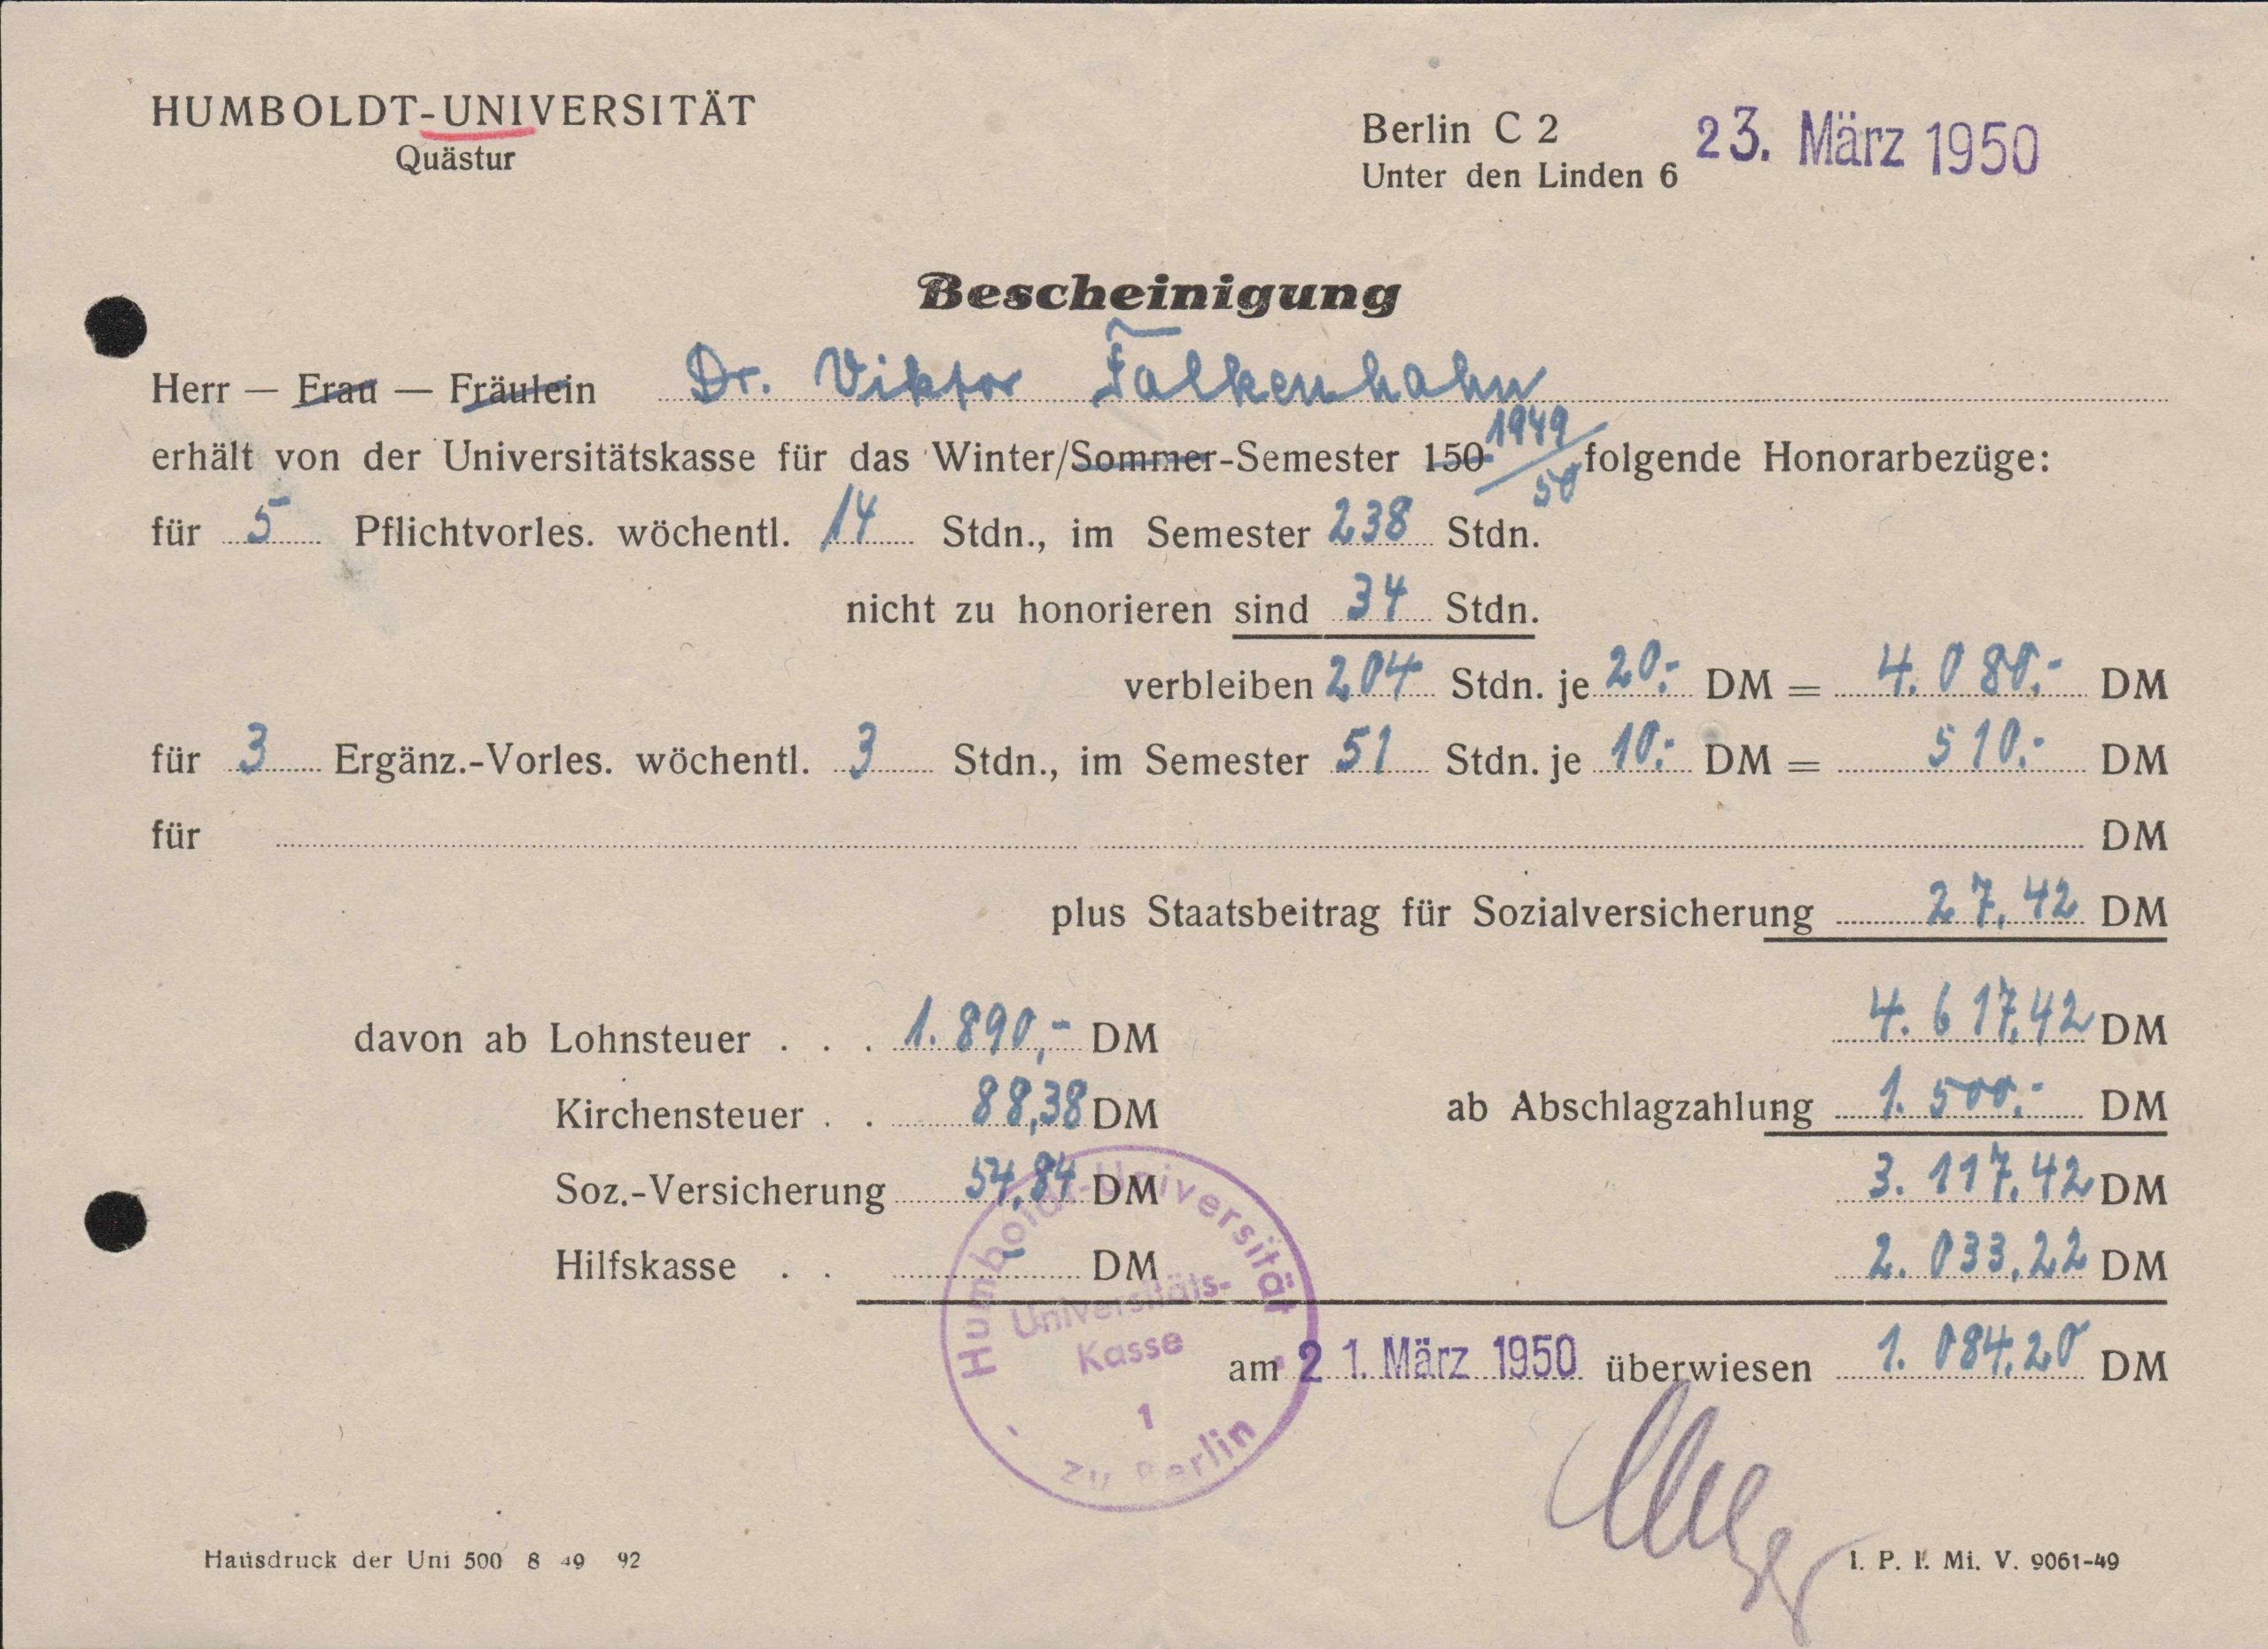 Pažyma apie V. Falkenhanui išmokėtą honorarą už paskaitas Humboldtų universitete. 1950 m. kovo 21 d. MLLM P26435